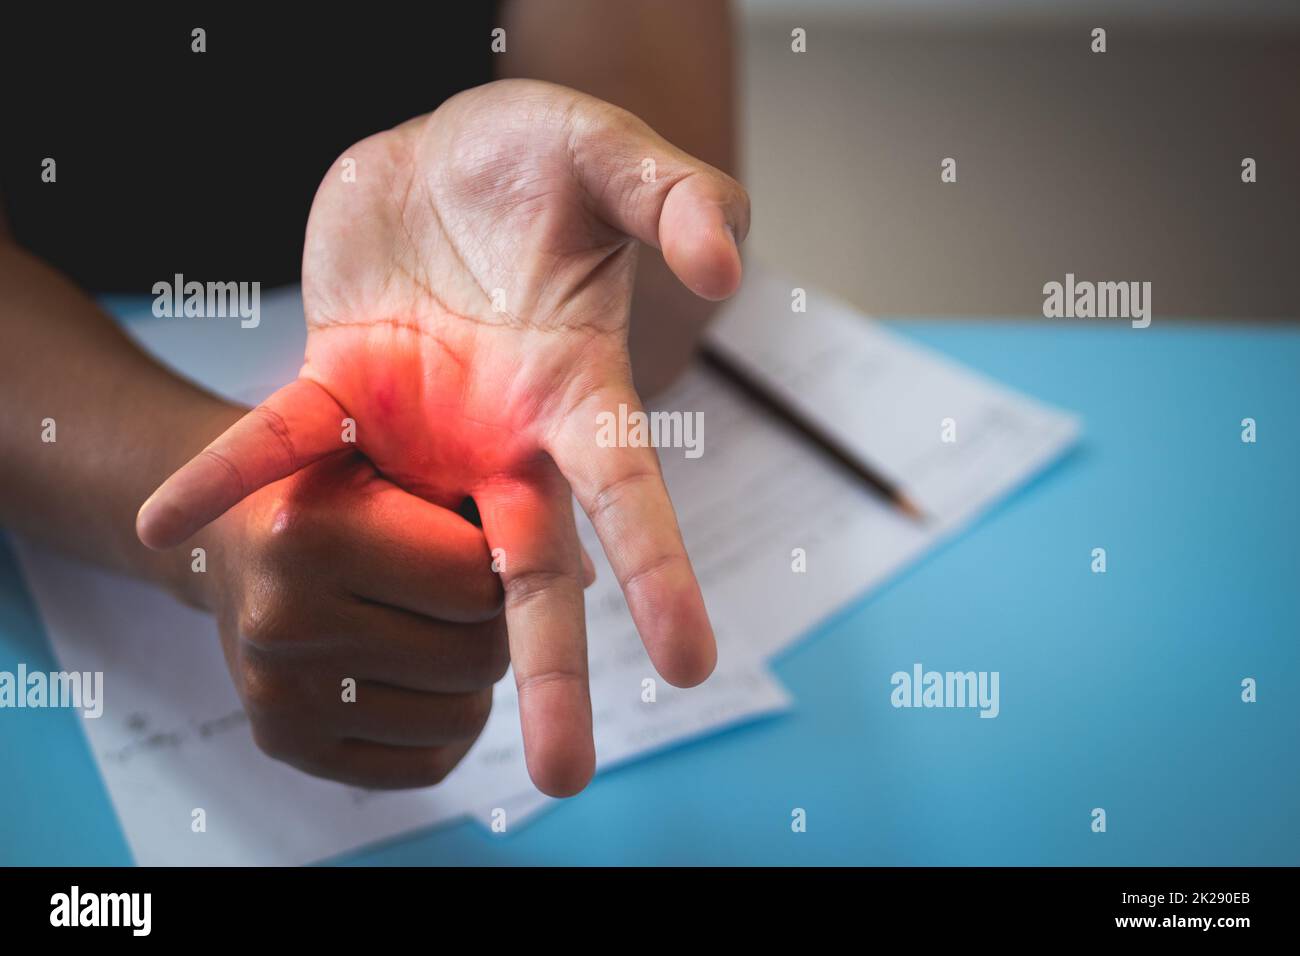 L'uomo allunga il dito dell'anello dopo che ha lavorato. Concetto di sindrome da ufficio. L'area del sintomo dolore è visualizzata in rosso. Primo piano. Foto Stock